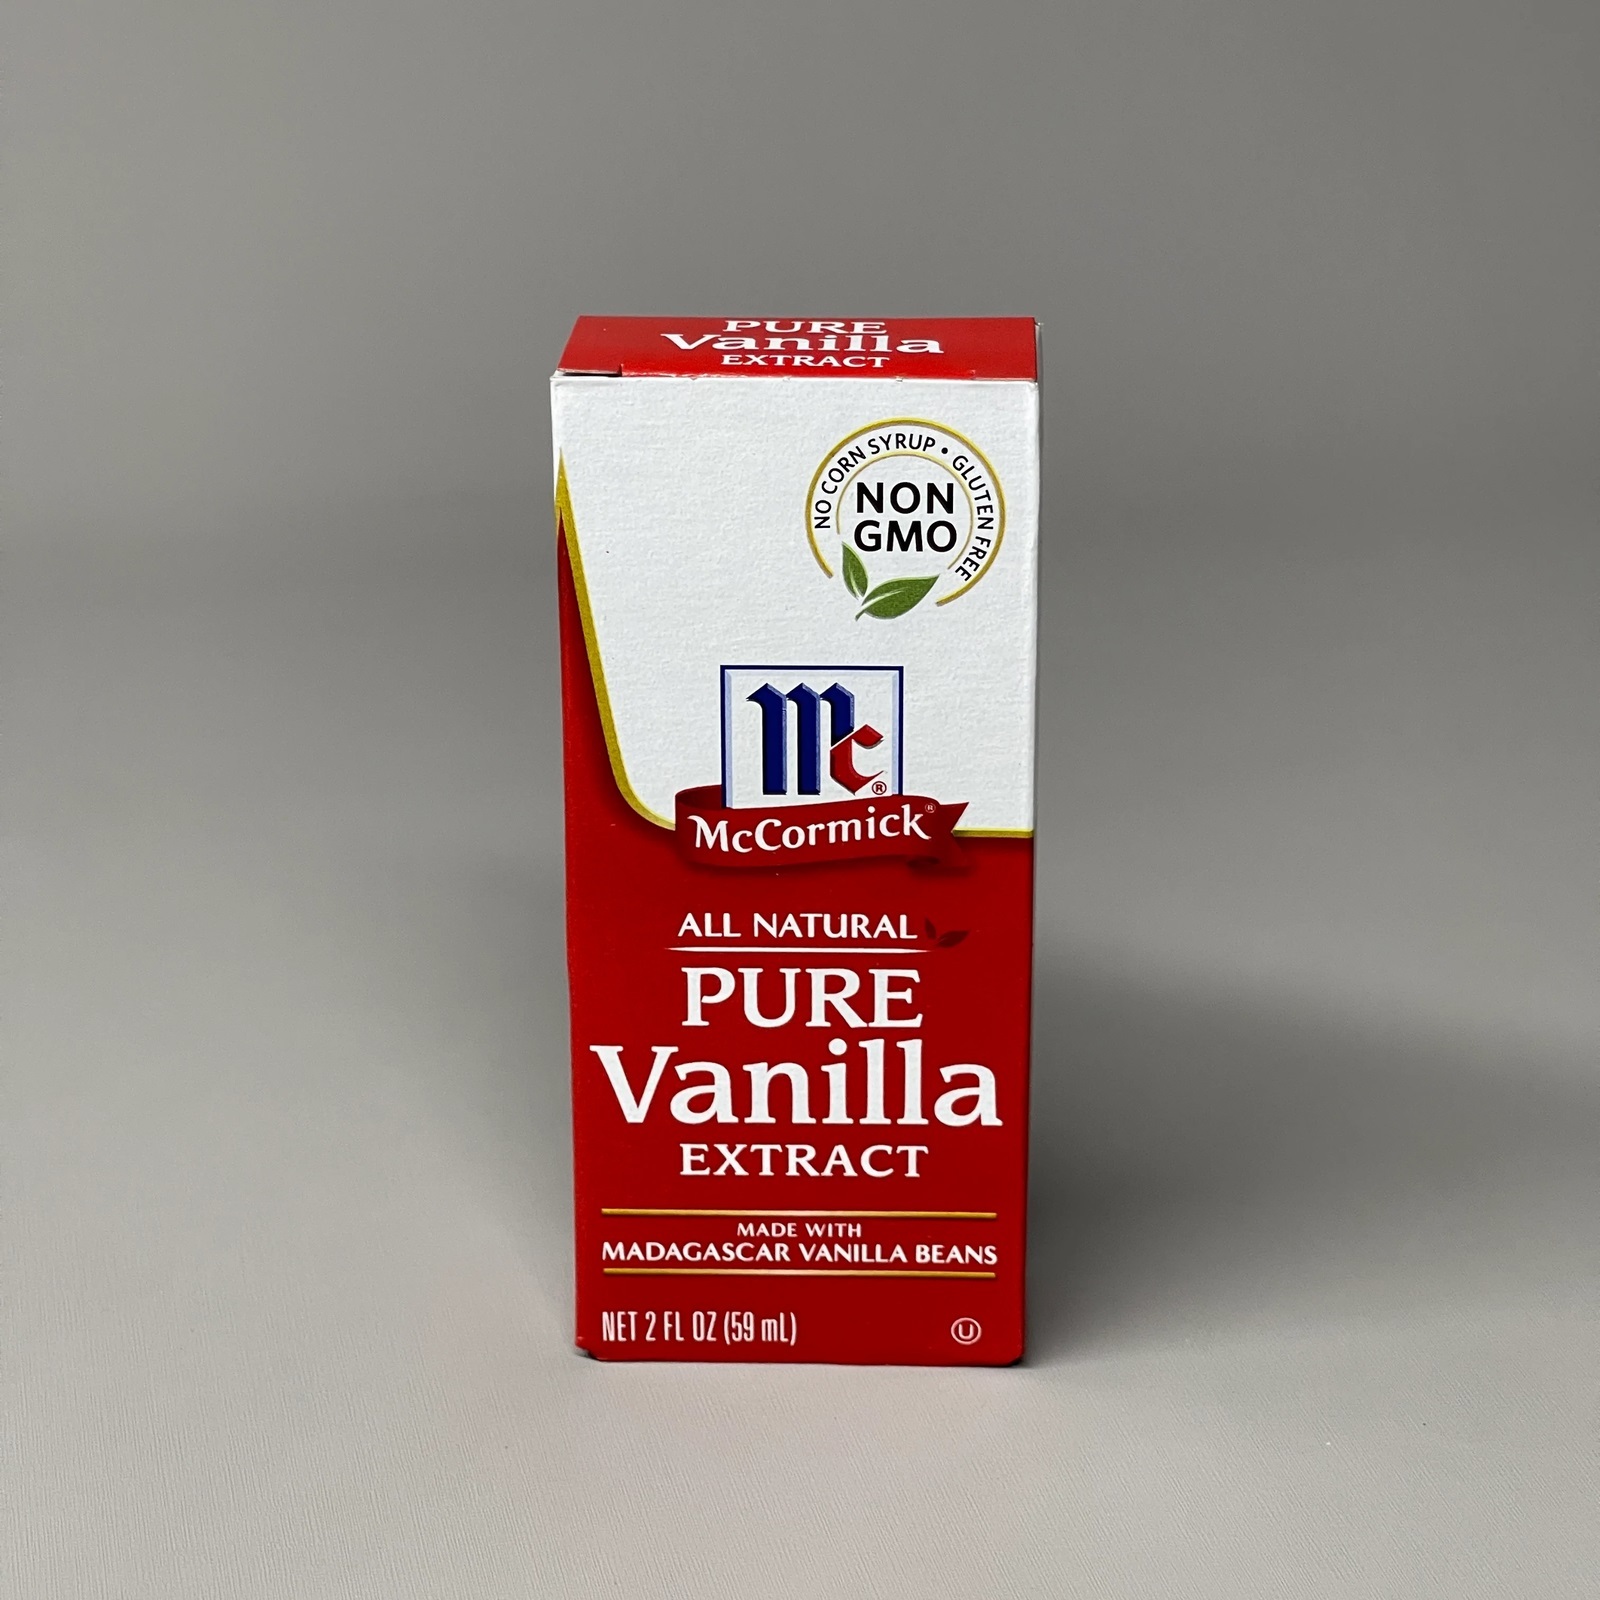 MCCORMICK Pure Vanilla Extract 2.0 fl oz - $9.99